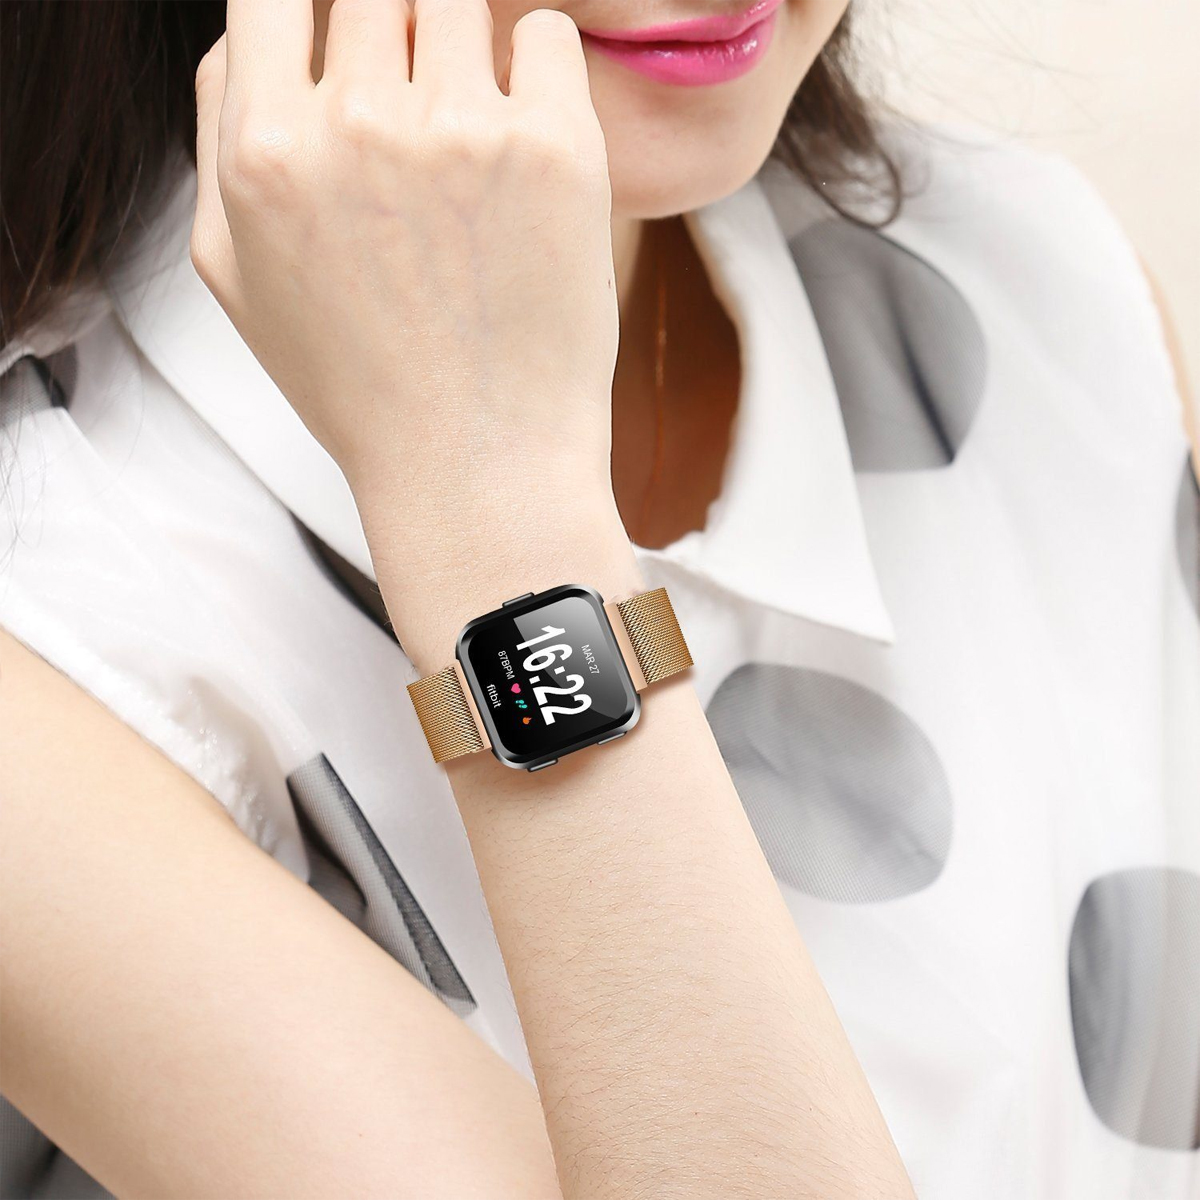 /Lite/ für Roségold Fitbit, DIIDA 18mm, Smartwatch-Armband, SE, Versa Armbänder, / Versa Watch 2 Smartwatch Uhrenarmbänder, Fitbit